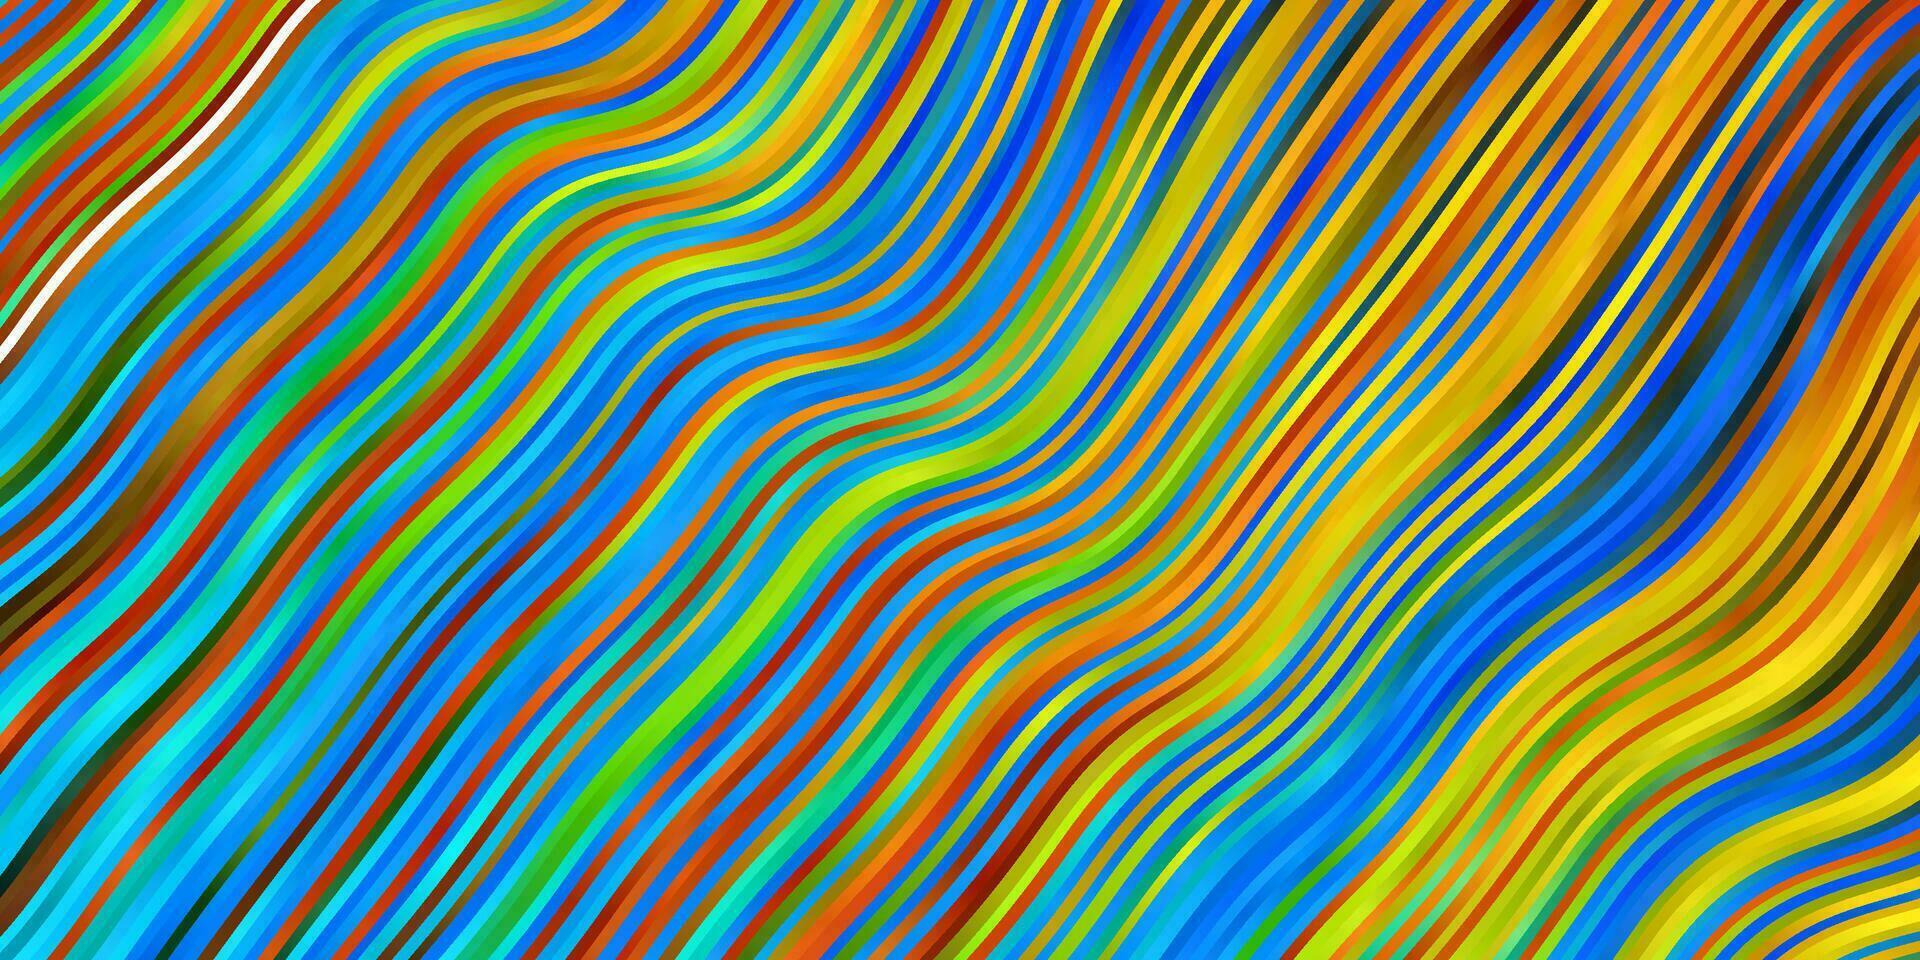 padrão de vetor azul e amarelo claro com linhas.